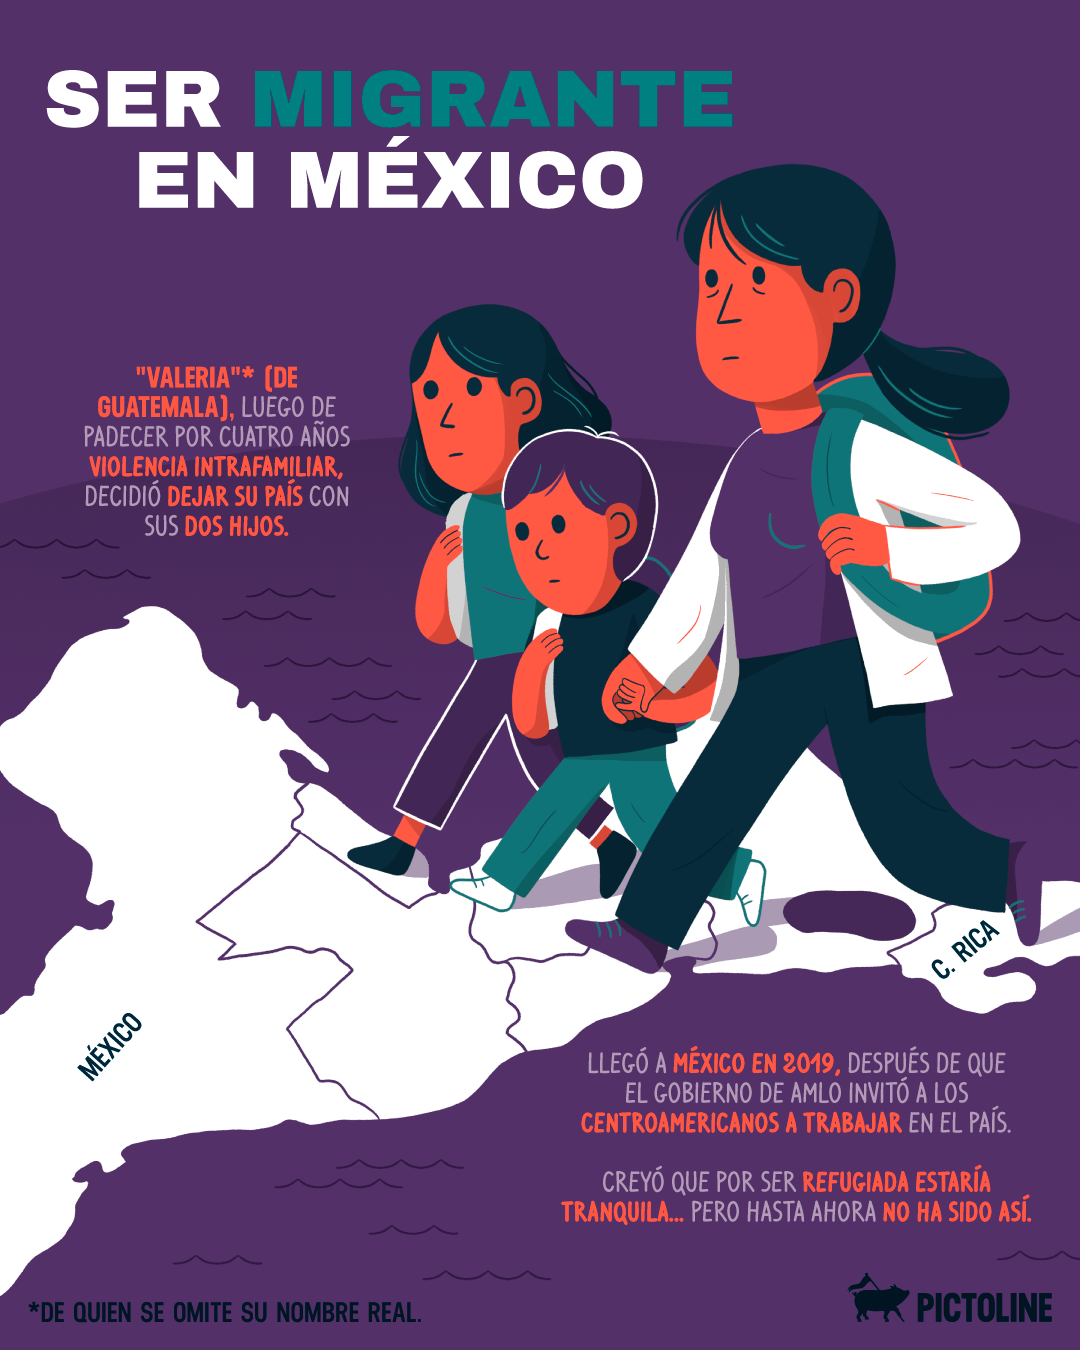 Ser migrante en México: un fuerte testimonio sobre todo lo que tienen que pasar muchas personas que llegan al país #DíaDelMigrante